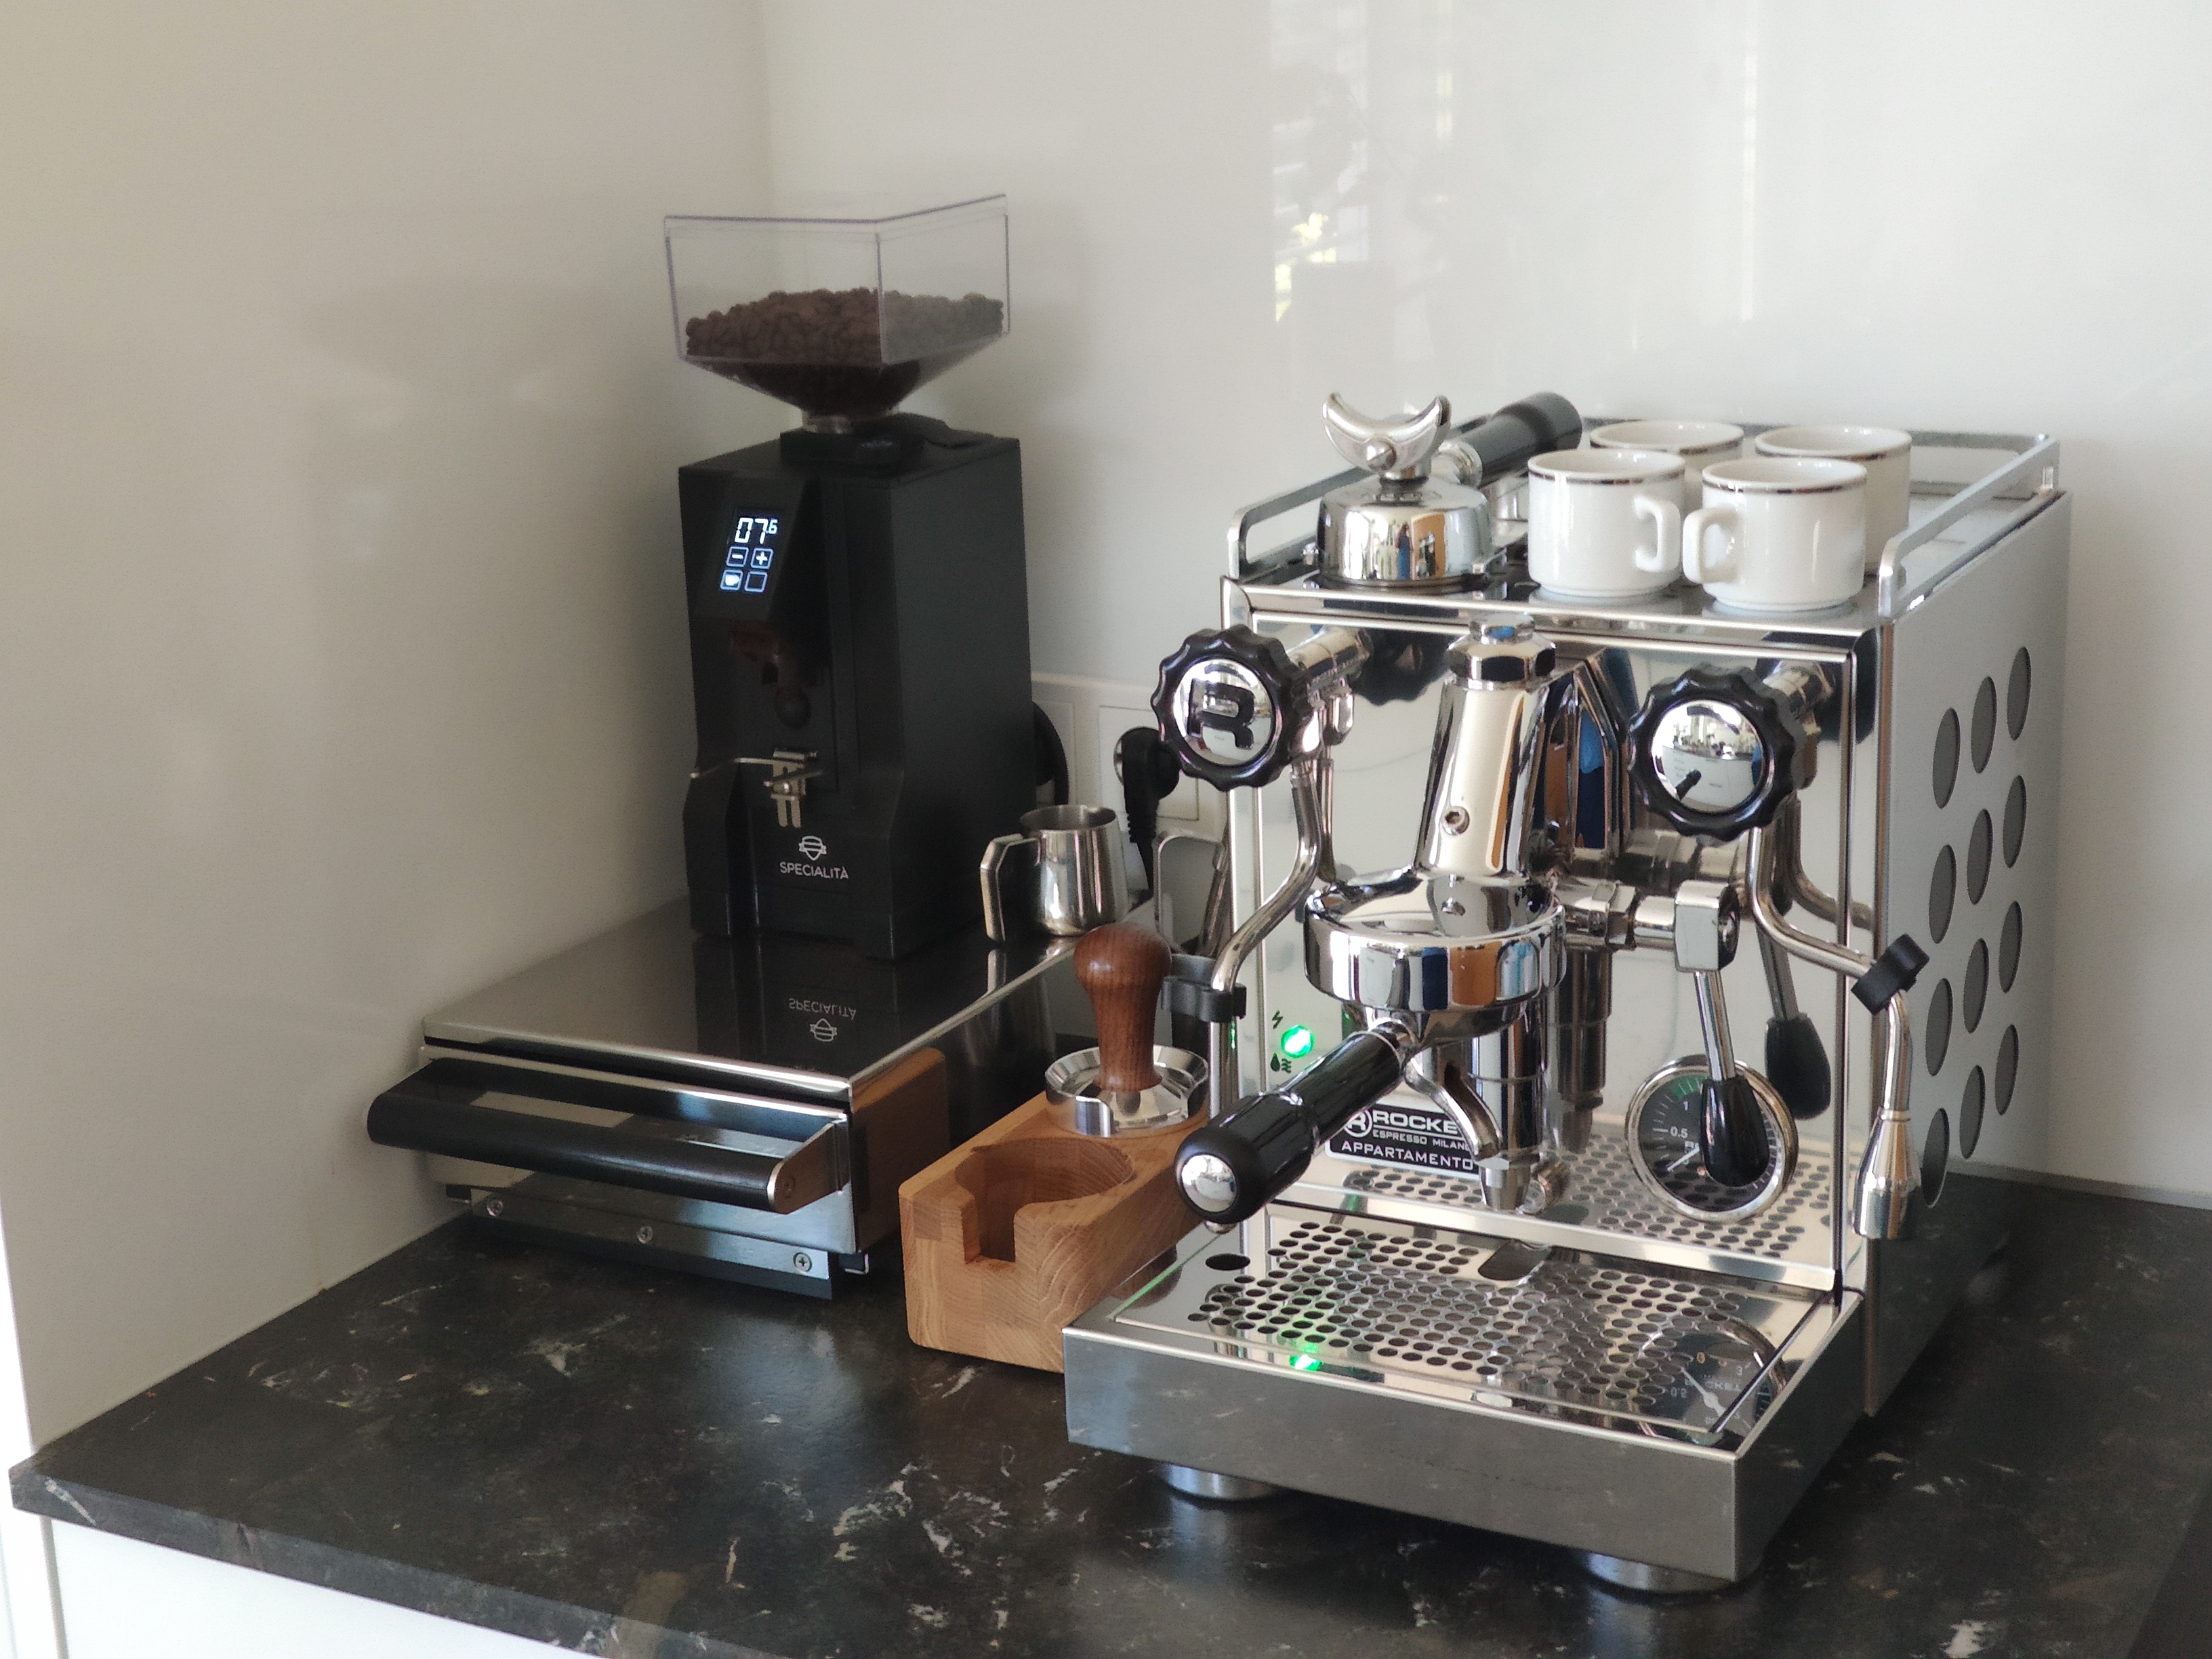 integrierter-kaffeevollautomat-empfehlenswert-422935-1.jpg